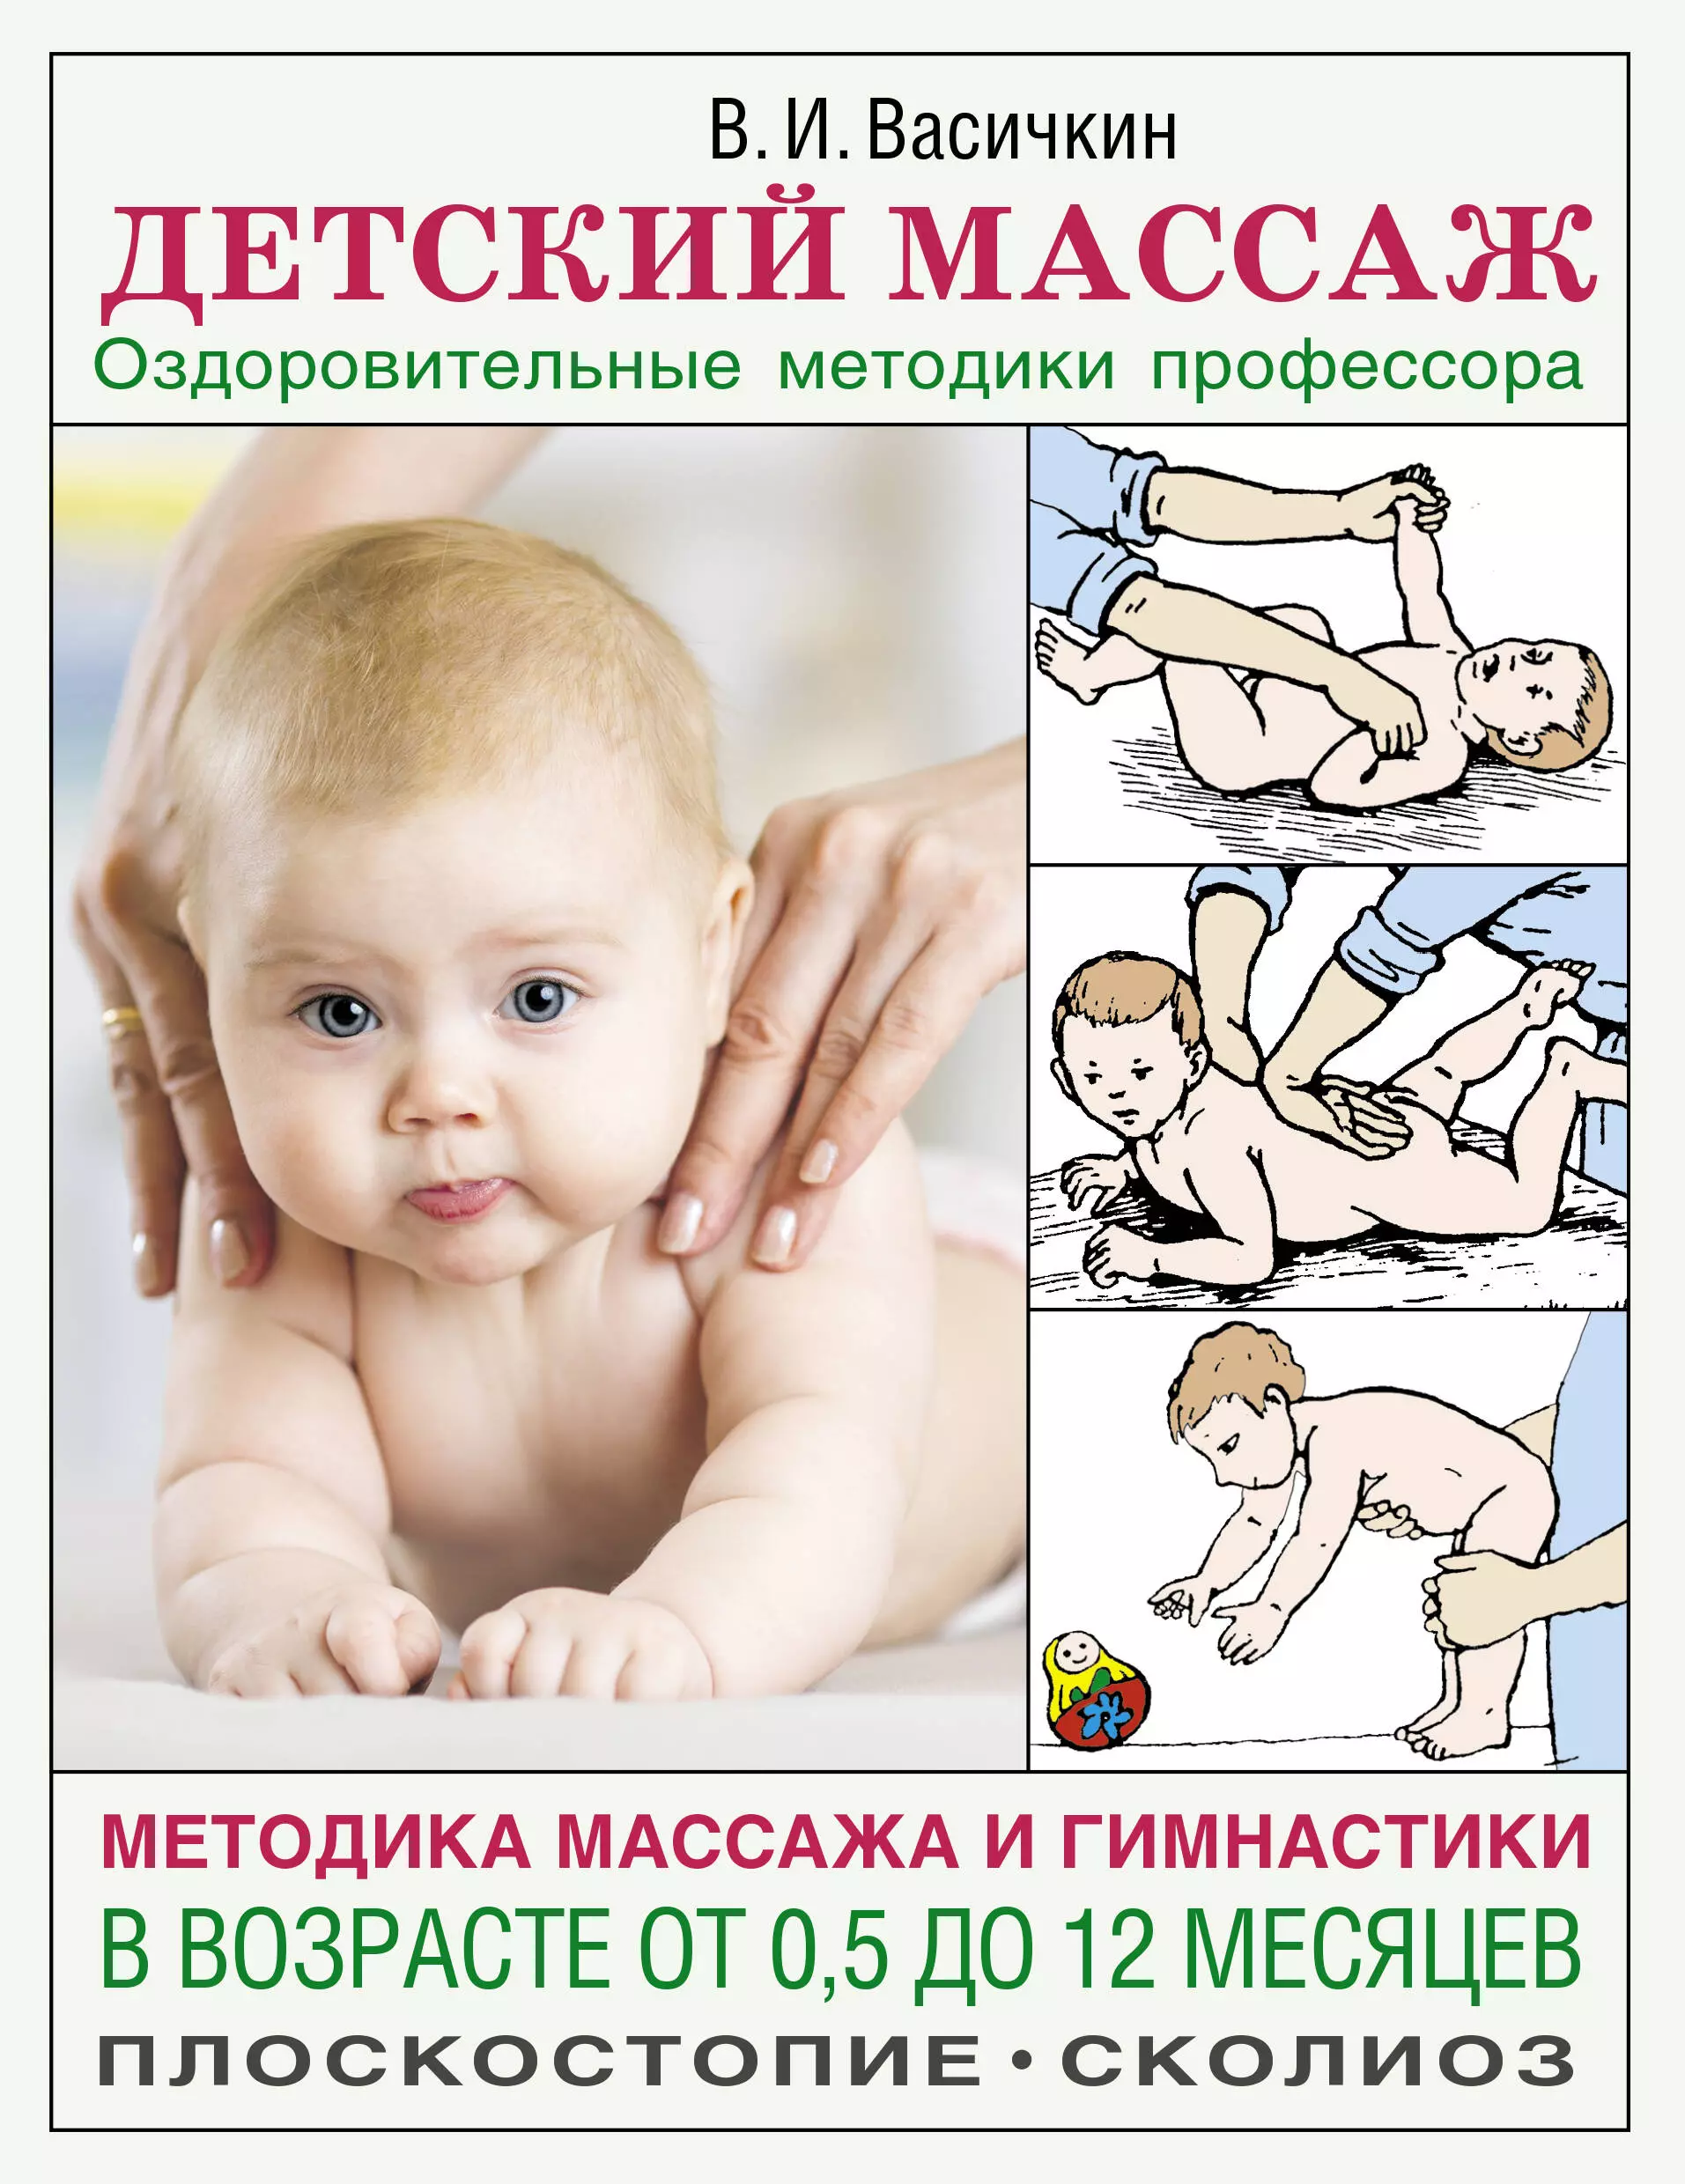 Васичкин Владимир Иванович - Детский массаж. Методика массажа и гимнастики в возрасте от 0,5 до 12 месяцев